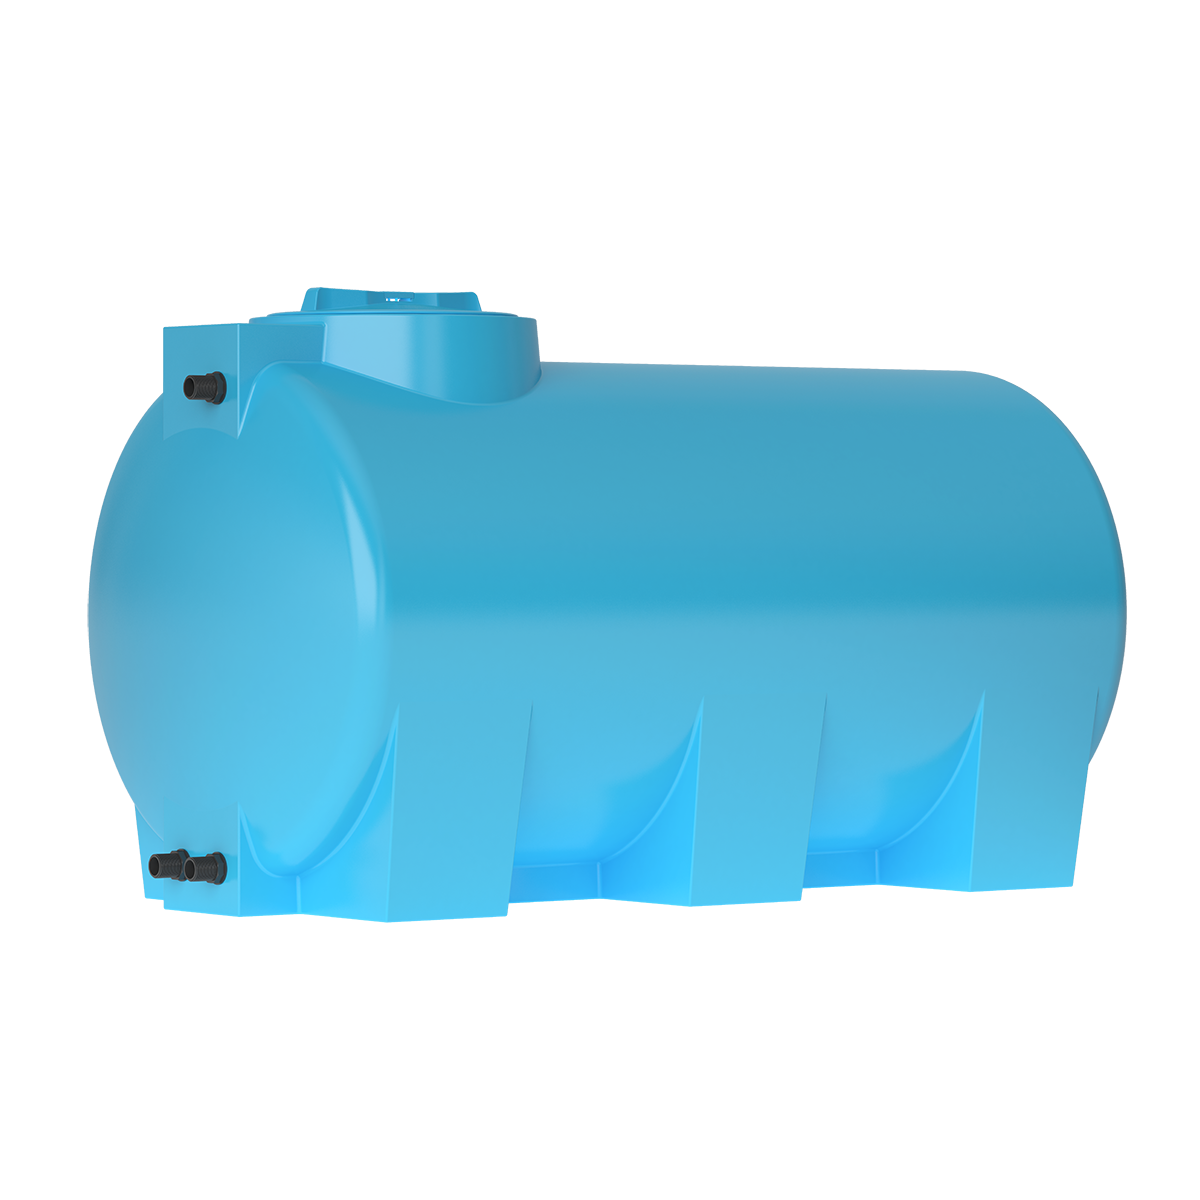 Бак Aquatech для воды ATH 1500 (синий) с поплавком (0-16-2241)